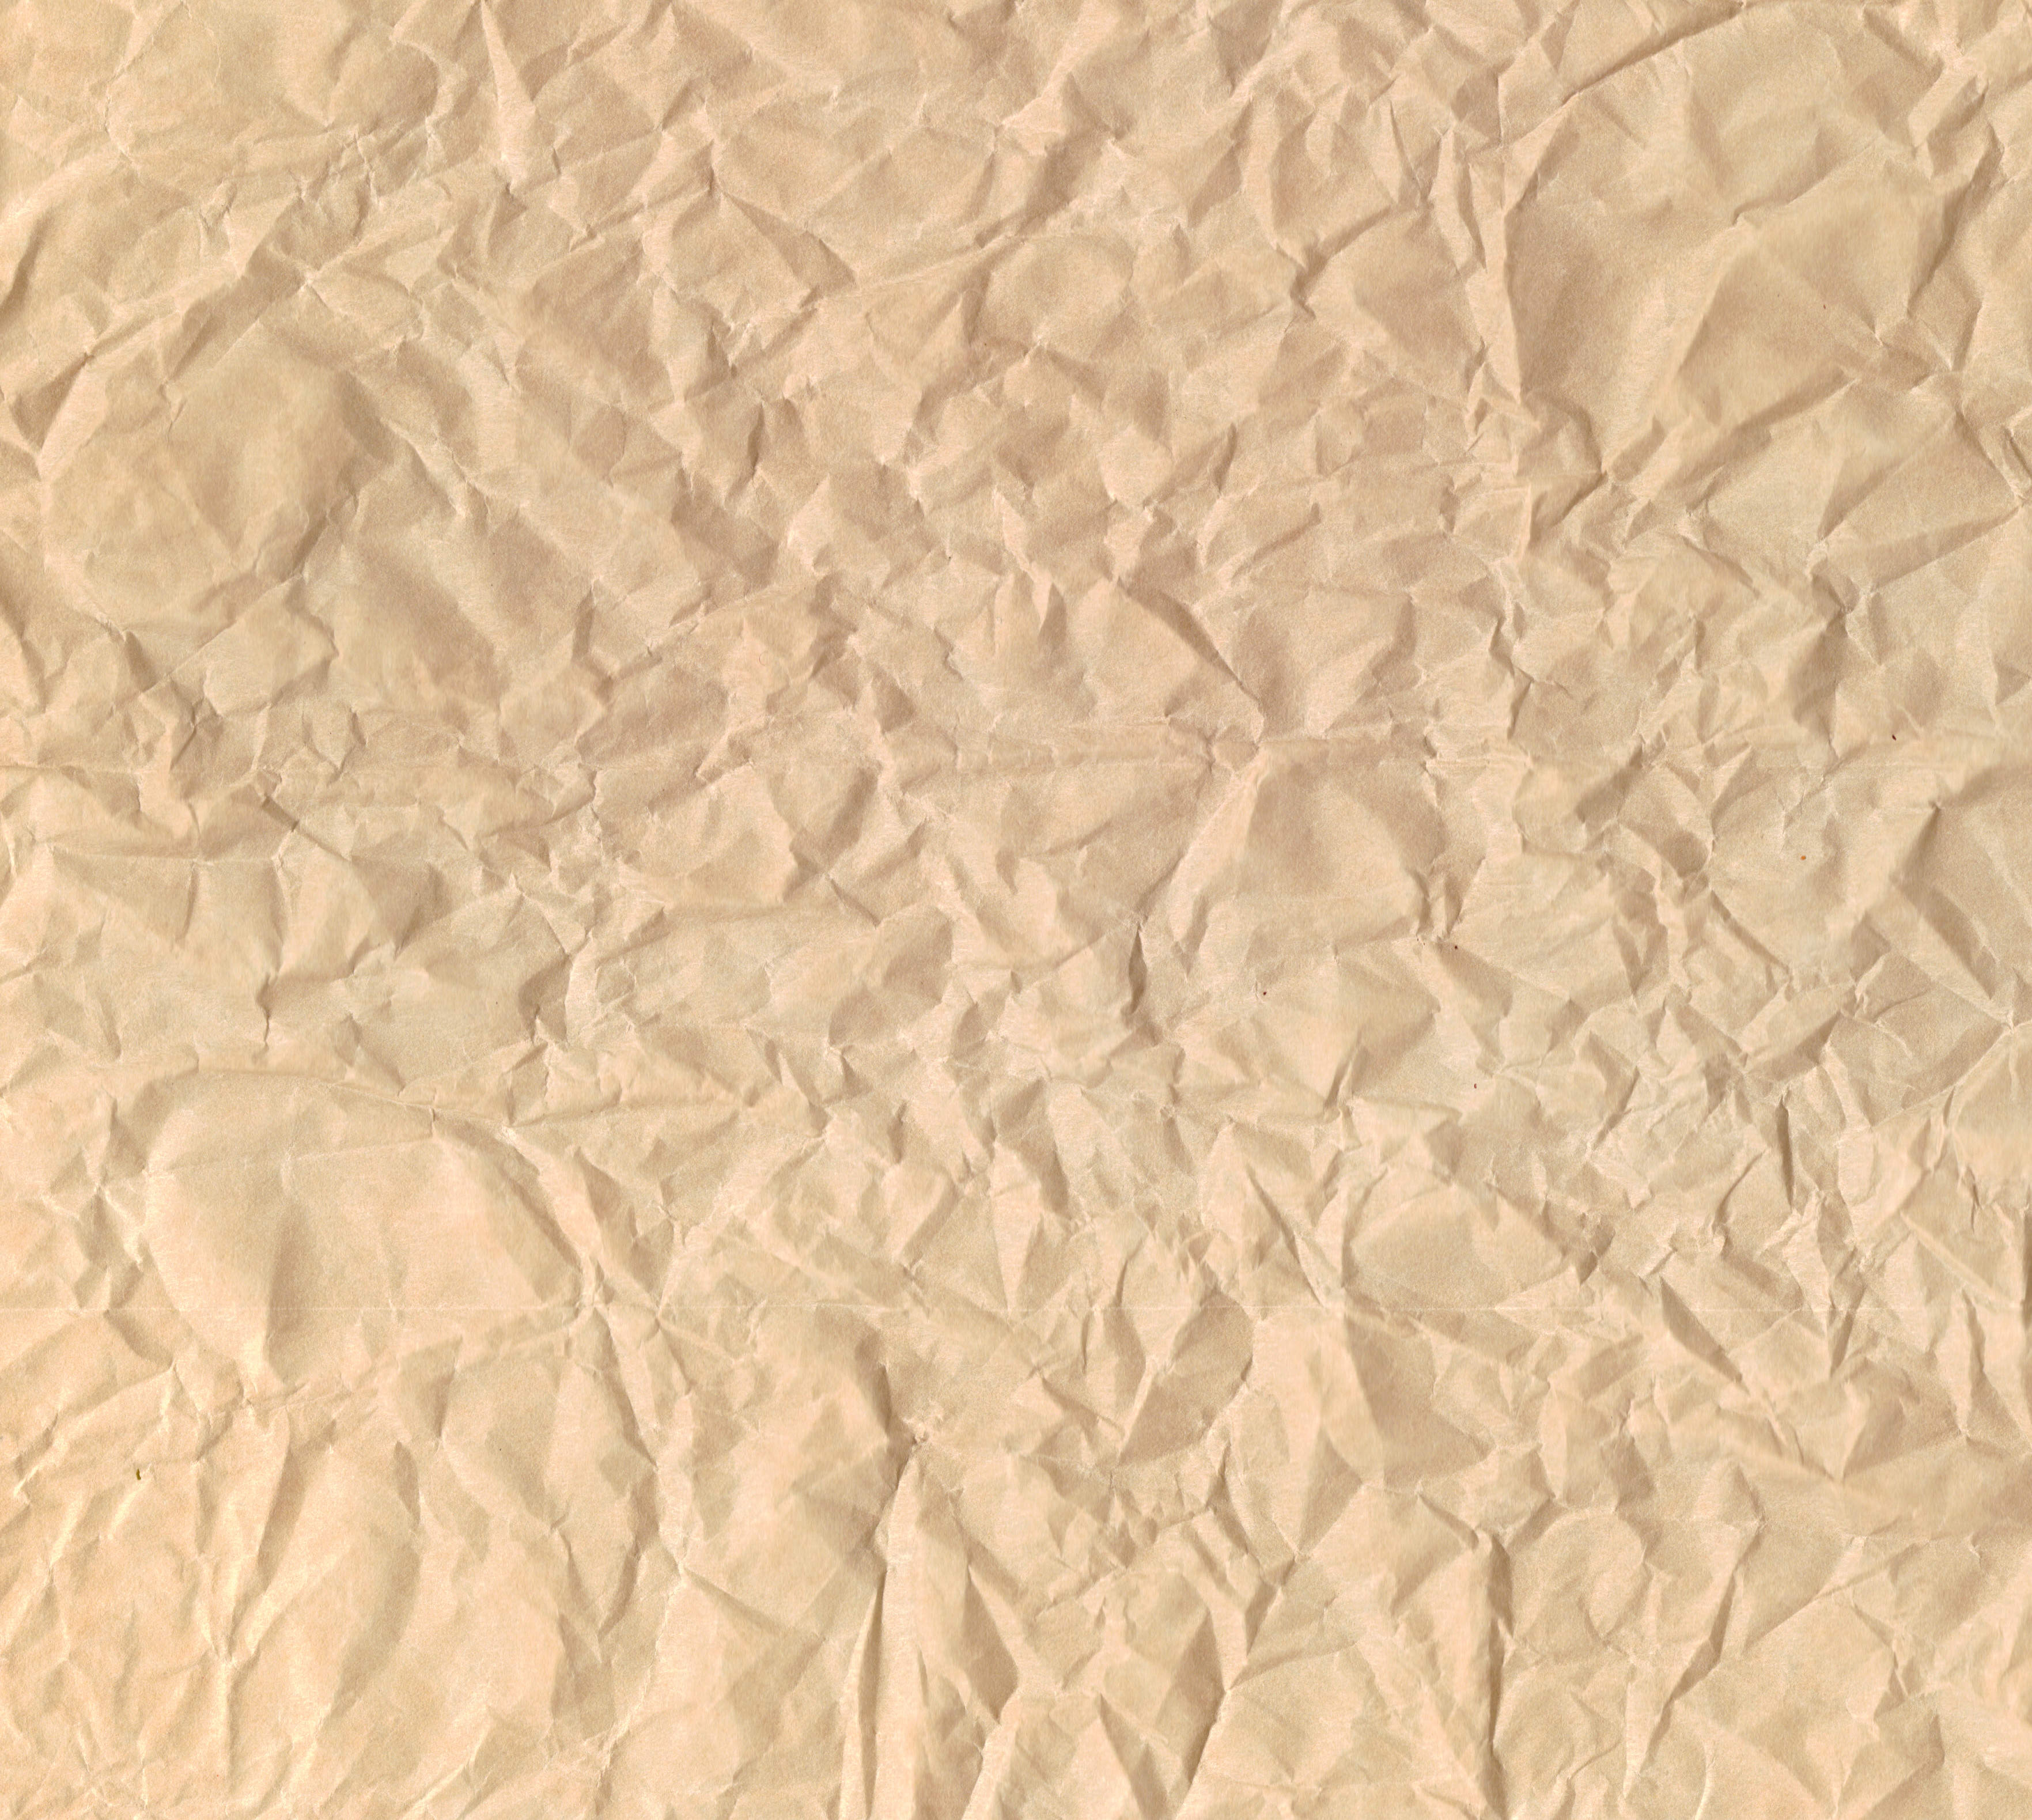 Wrinkled Brown Paper Textures (JPG) Vol. 2